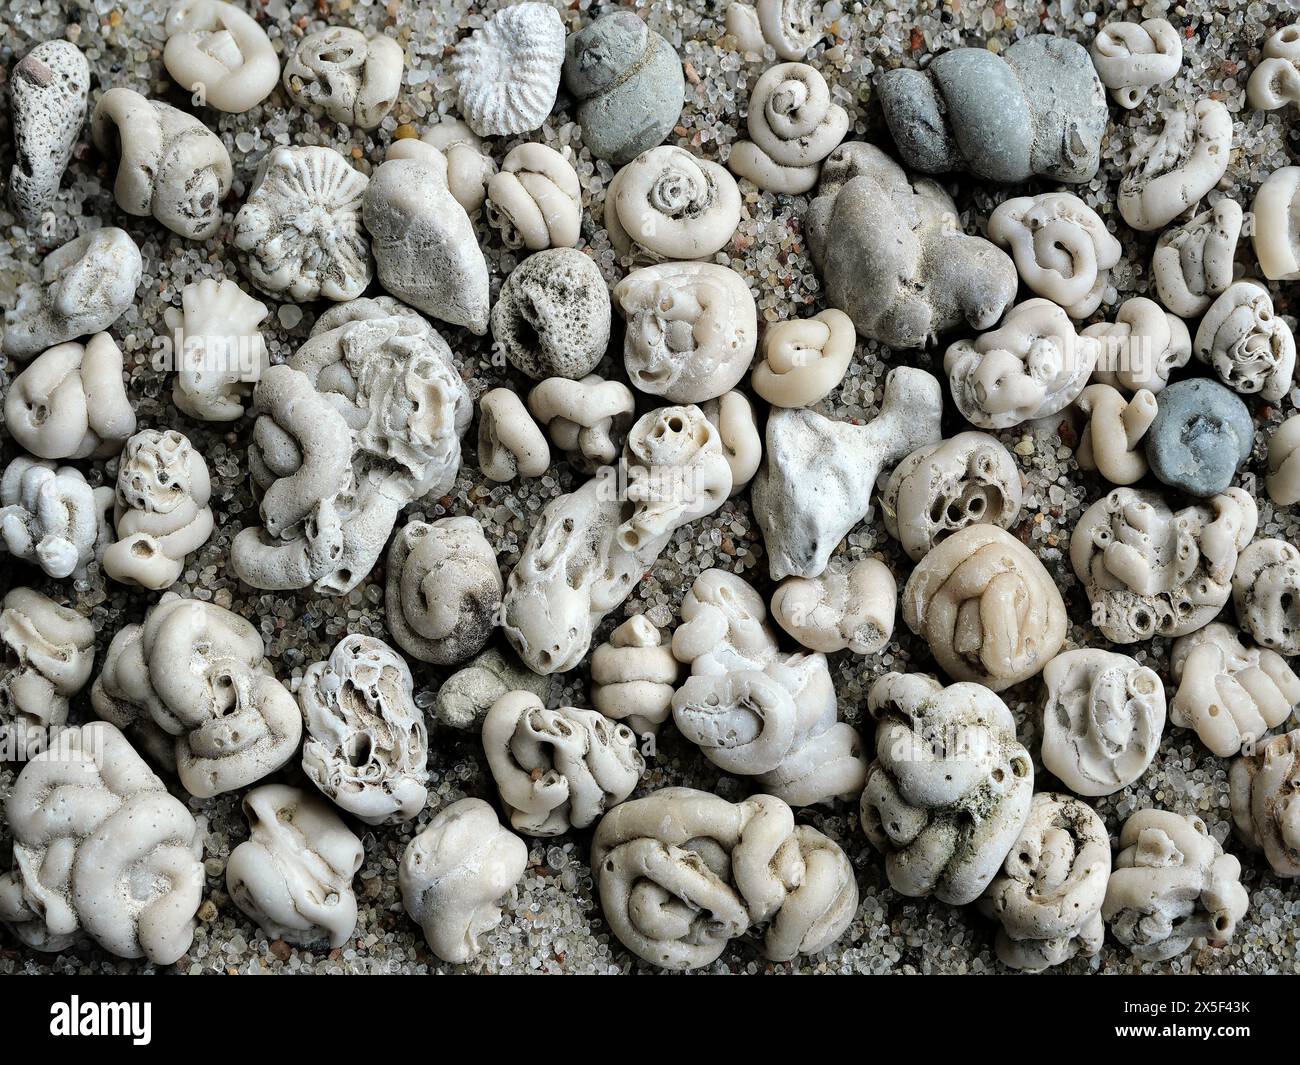 Empfindliche Kalkröhren von Polychaetenwürmern, kleine Fossilien aus der Ostsee. Ideal für Sammler und faszinierende Hintergründe. Stockfoto